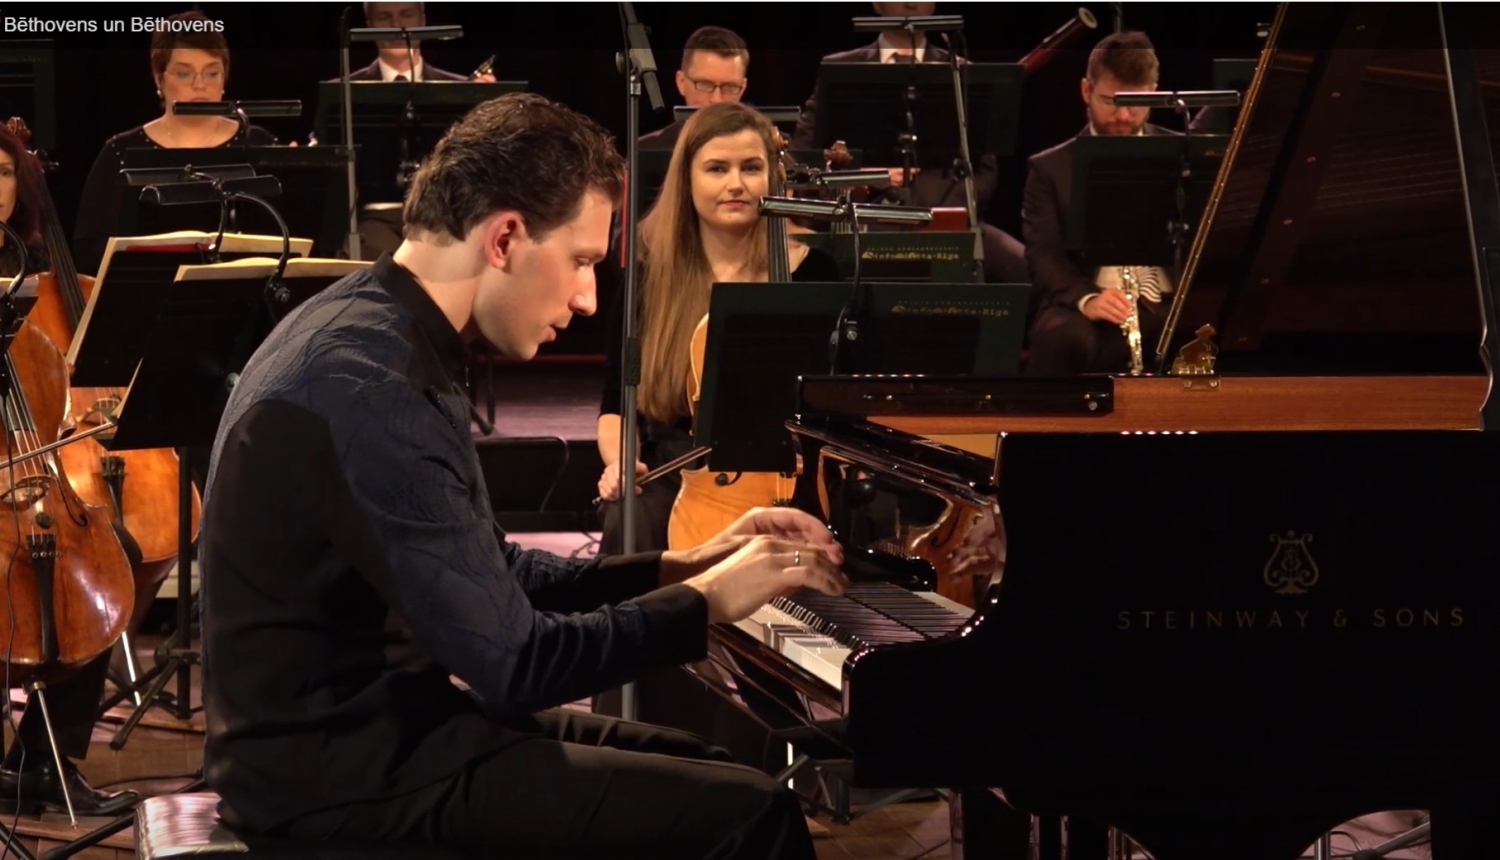 Pianists Reinis Zarins pie kavierēm koncertā "Bēthovens un Bēthovens"